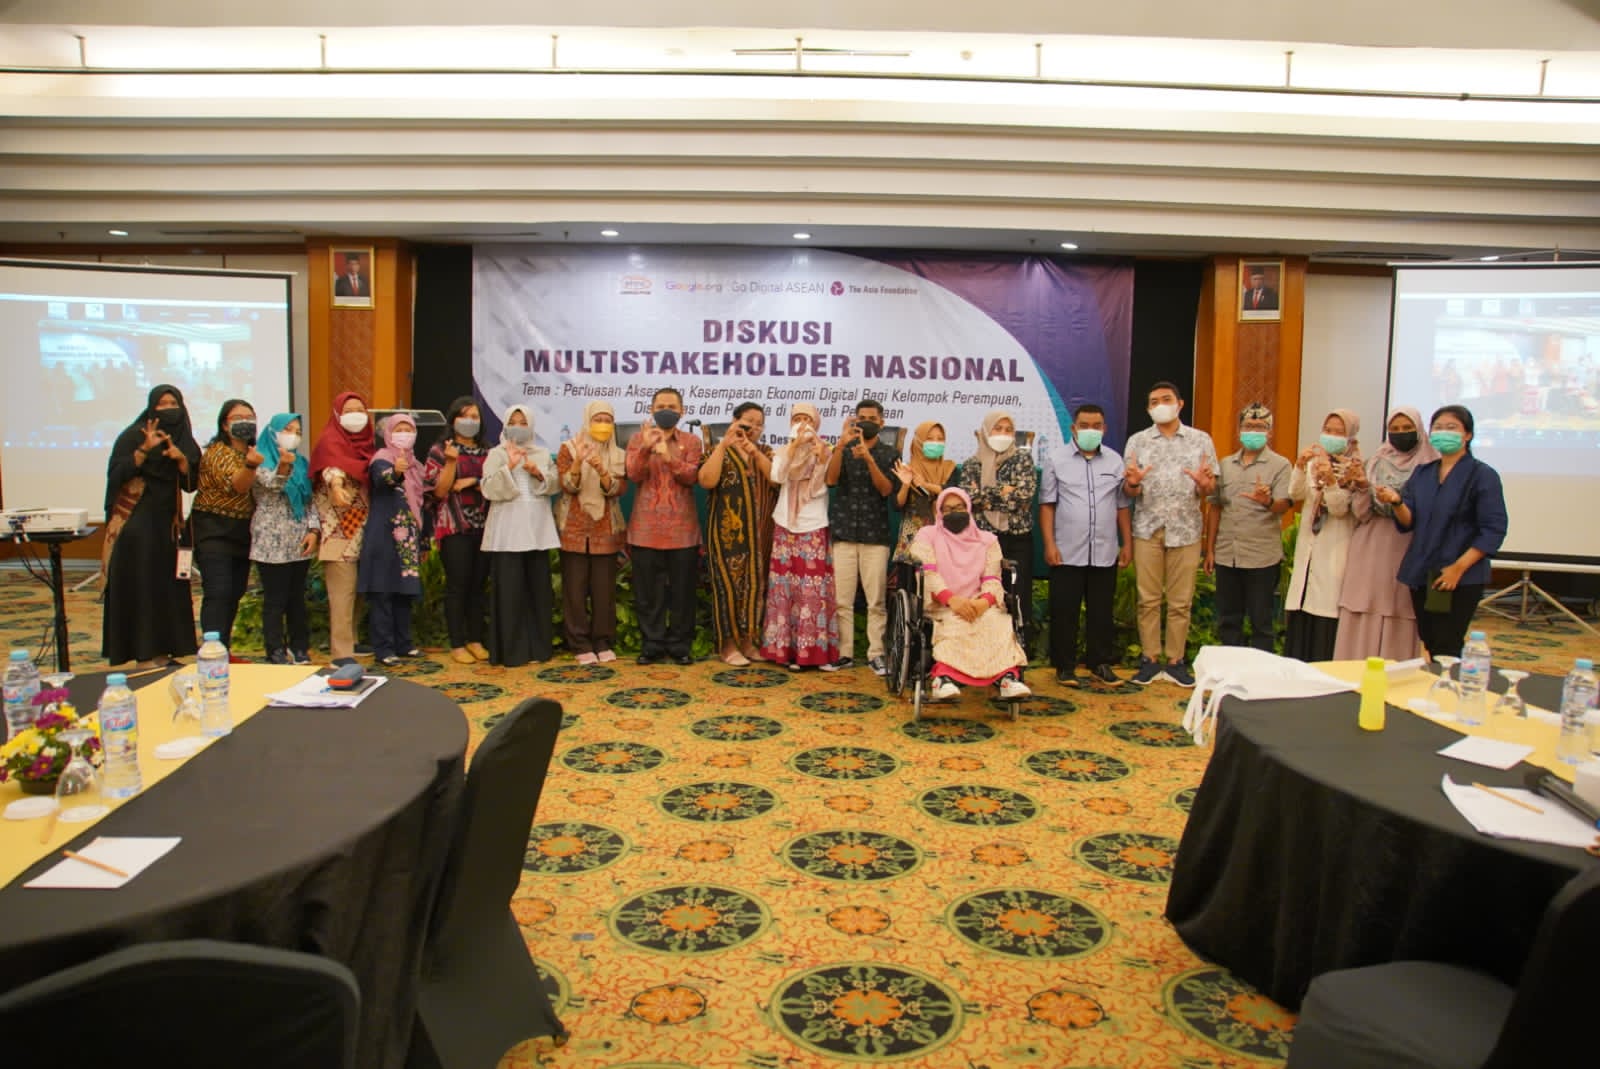 Asosiasi PPSW Lakukan Diskusi Multi Stakeholder Nasional di Hotel Grand Sahid Jaya